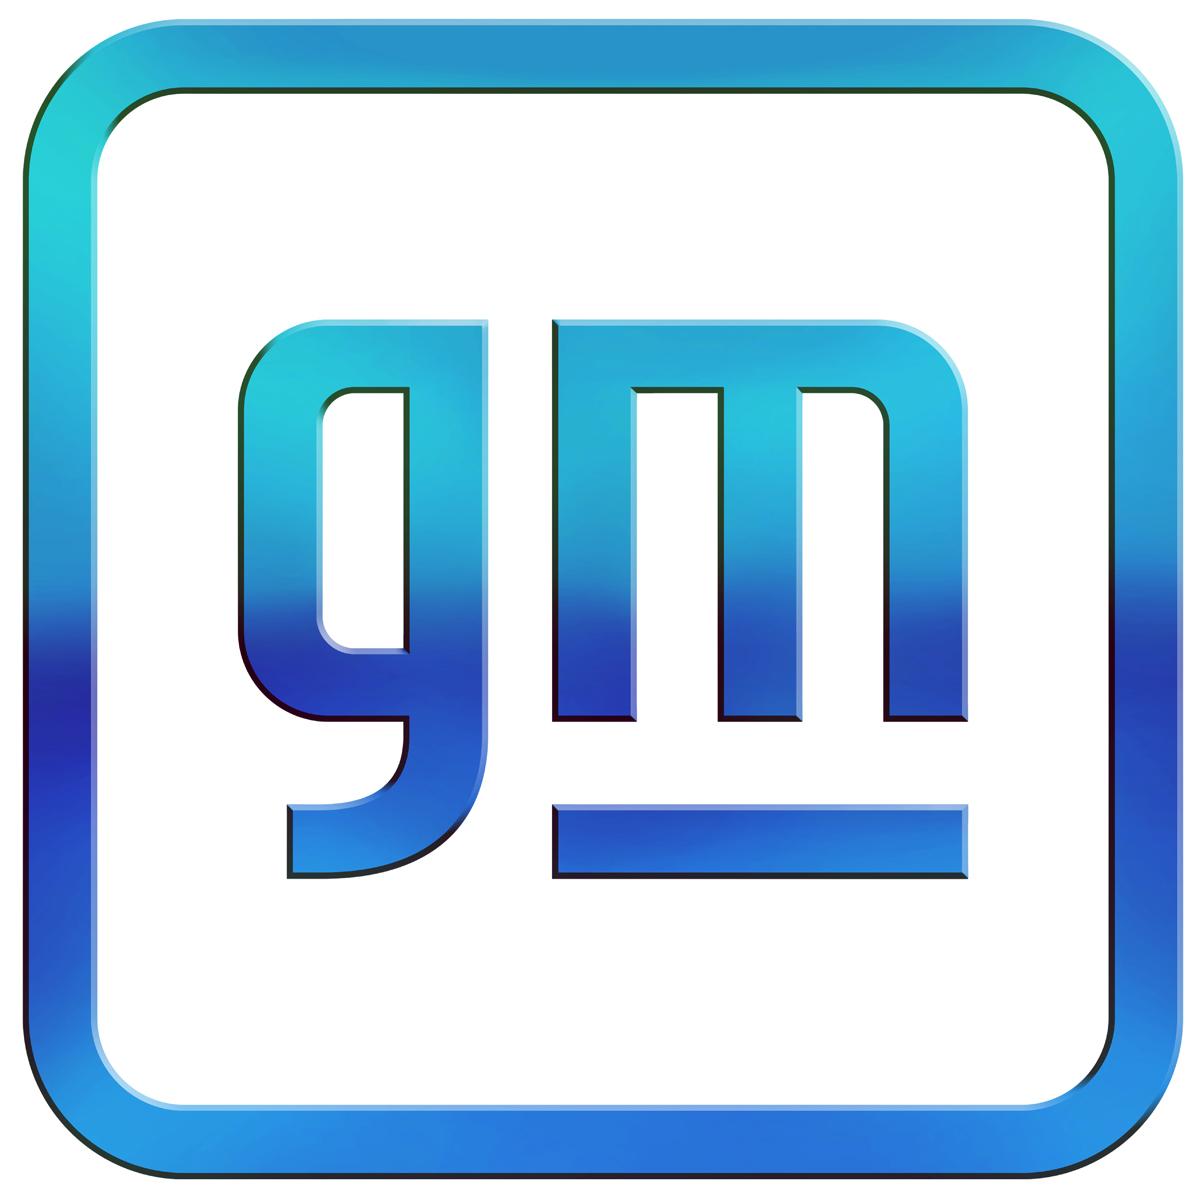 Gmがロゴを刷新 伝統を捨て 小文字 化した狙いとは 自動車情報 ニュース Web Cartop